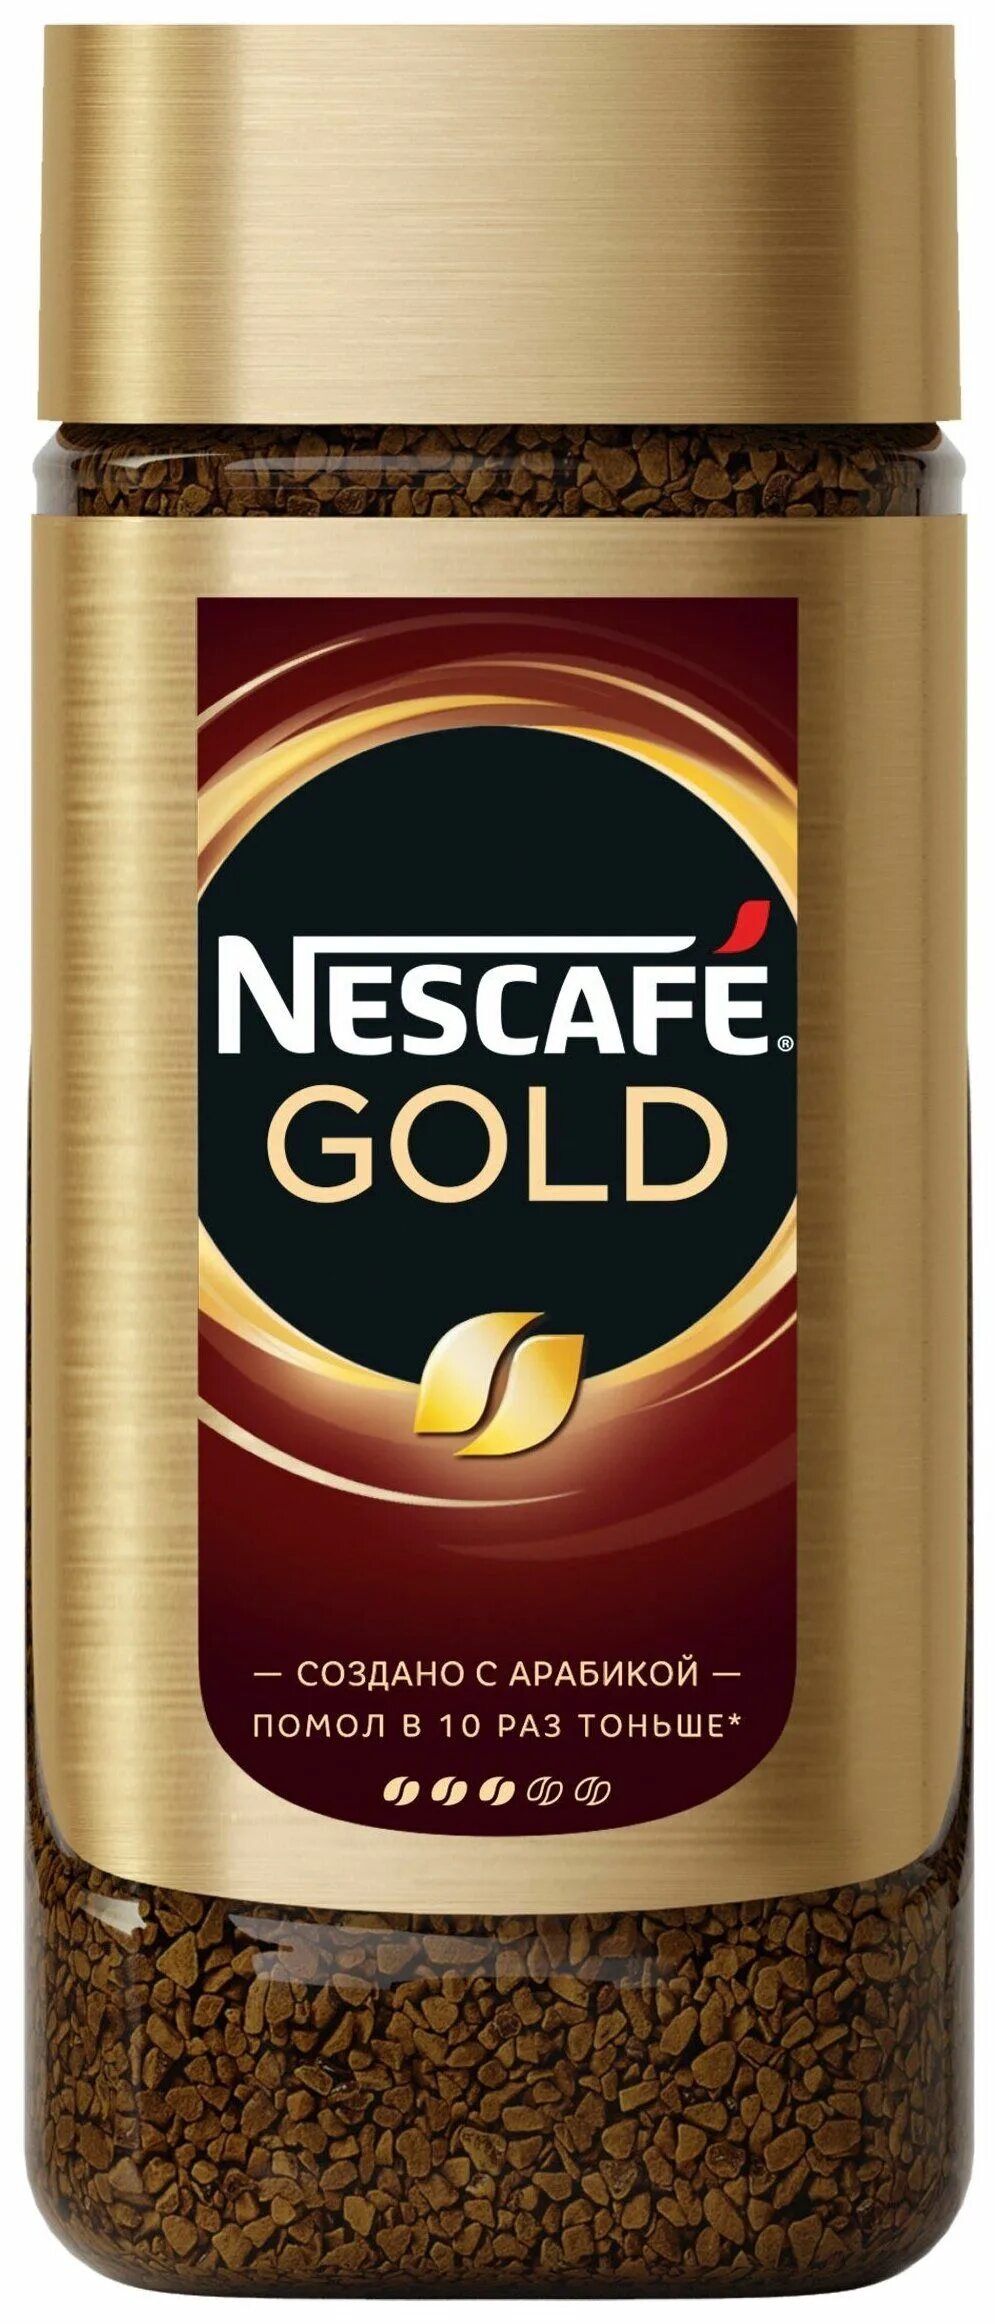 Кофе Нескафе Голд. Кофе Нескафе Голд 190г ст/б. Кофе растворимый Nescafe Gold, 190г. Нескафе Голд 500 гр. Кофе растворимый в банке купить